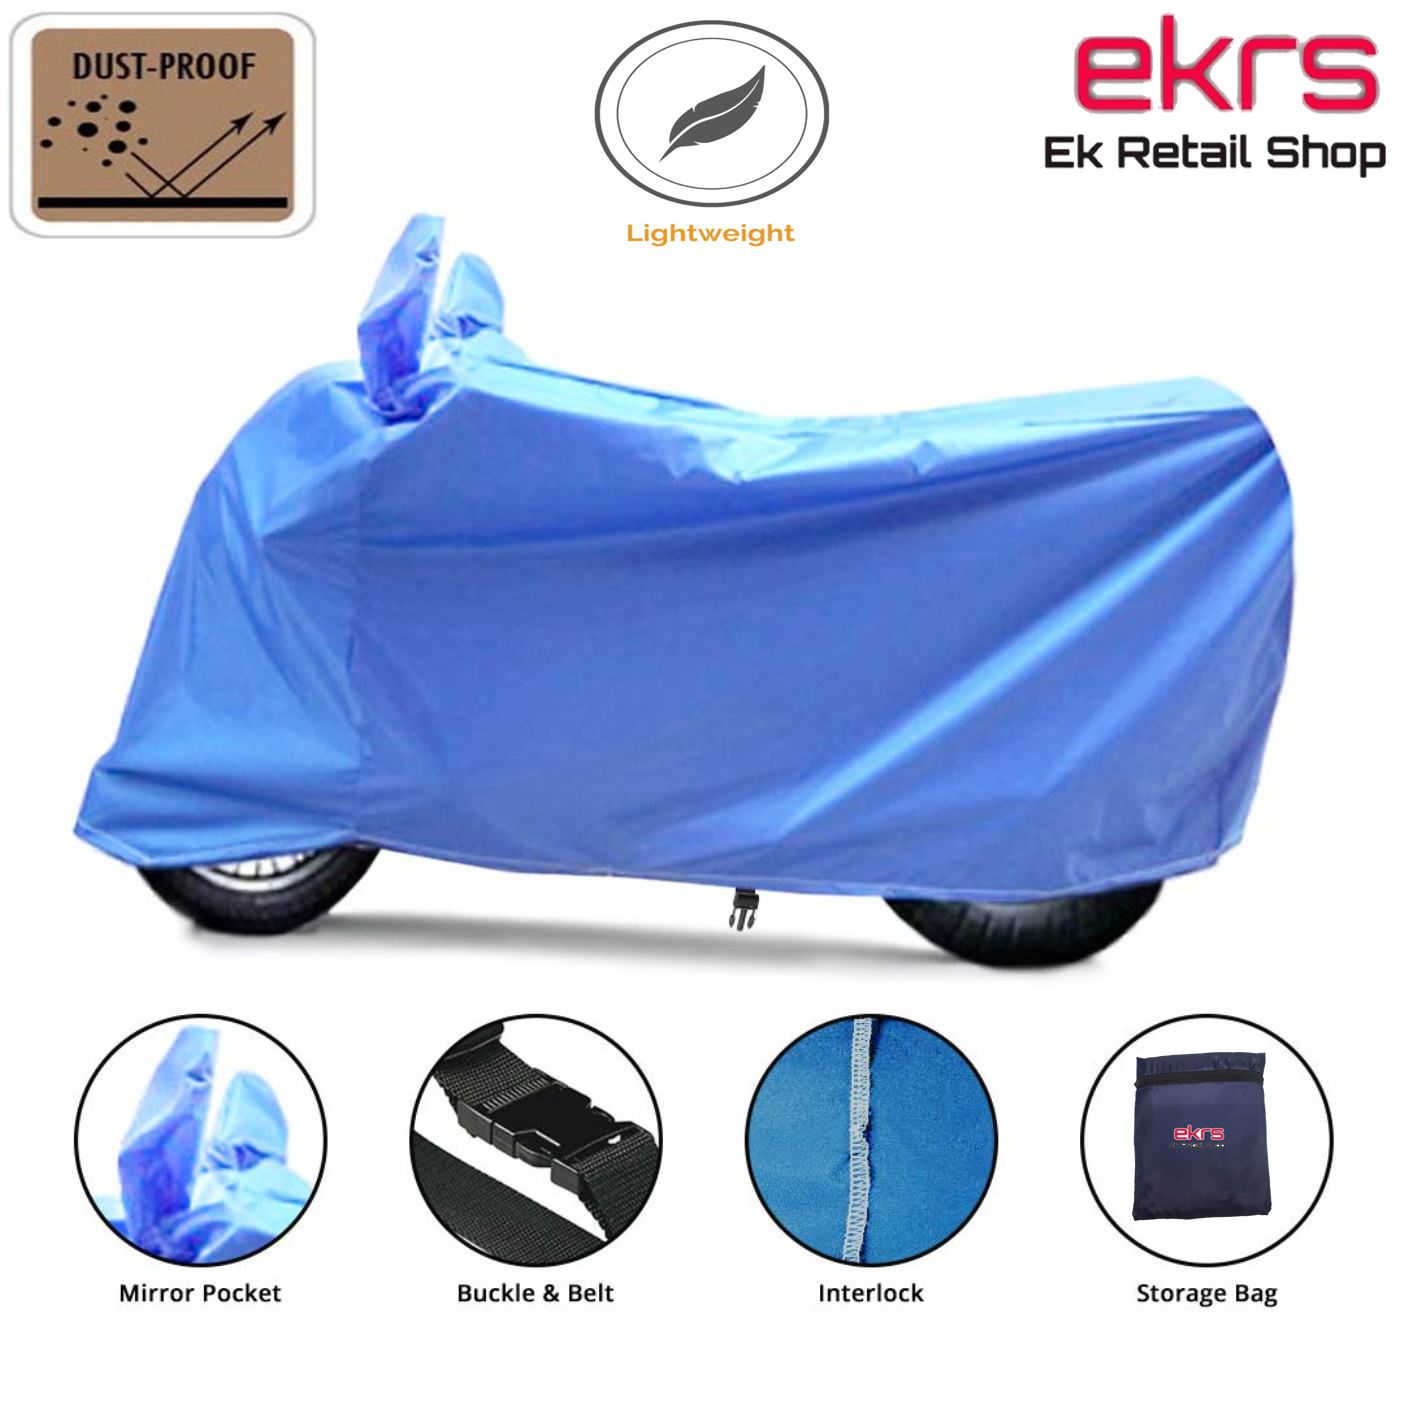 Ek Retail Shop Bike Body Cover for Monsoon - Water-Resistant, Dustproof ...